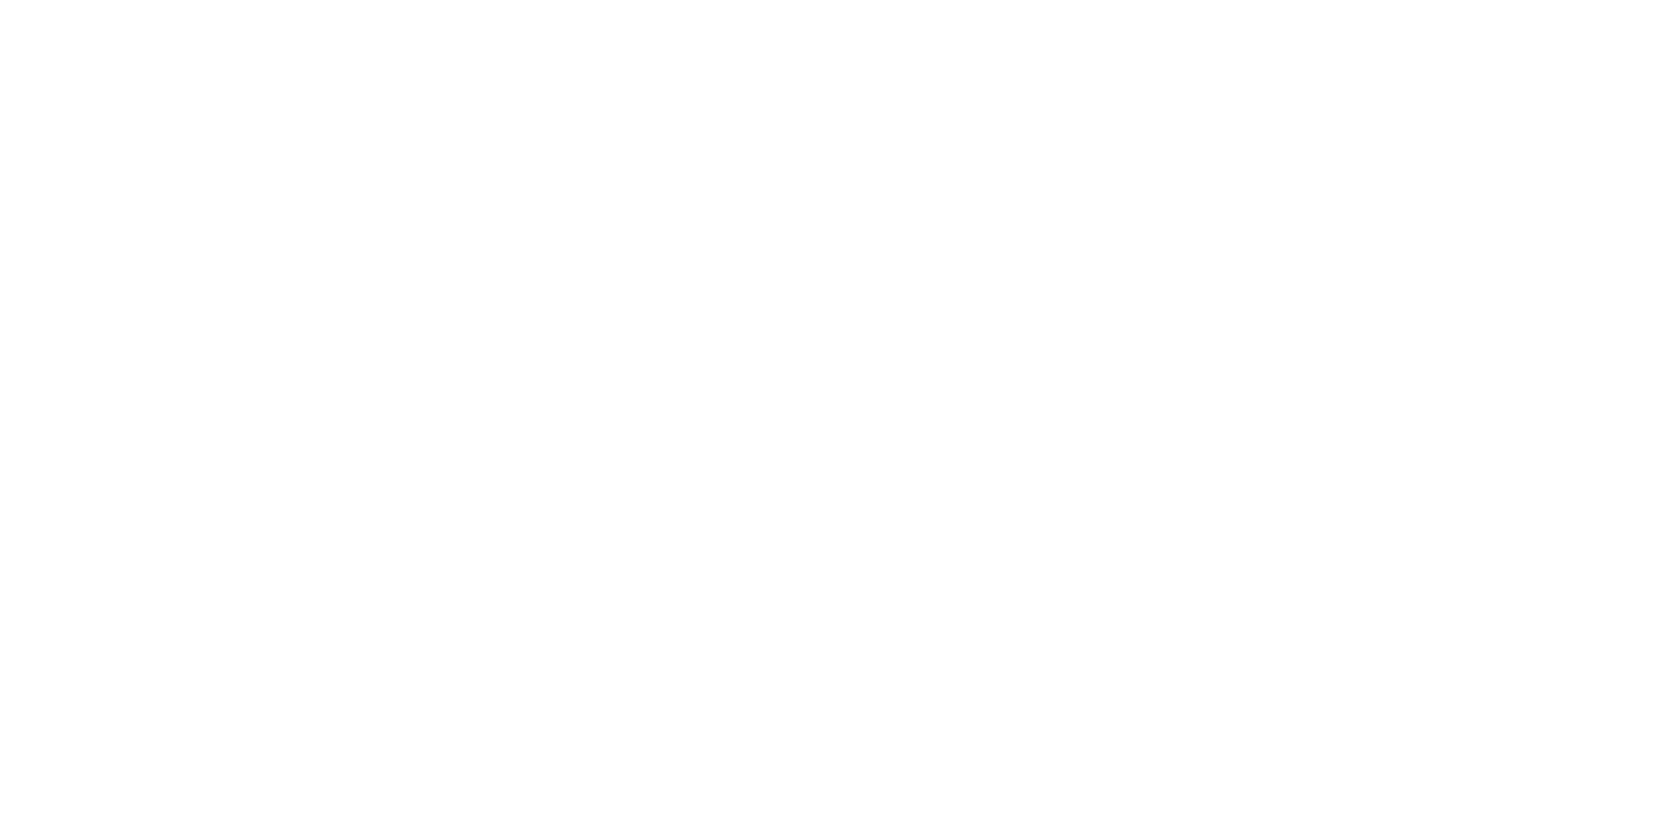 RGA - Rise Growth Academy - Barclays